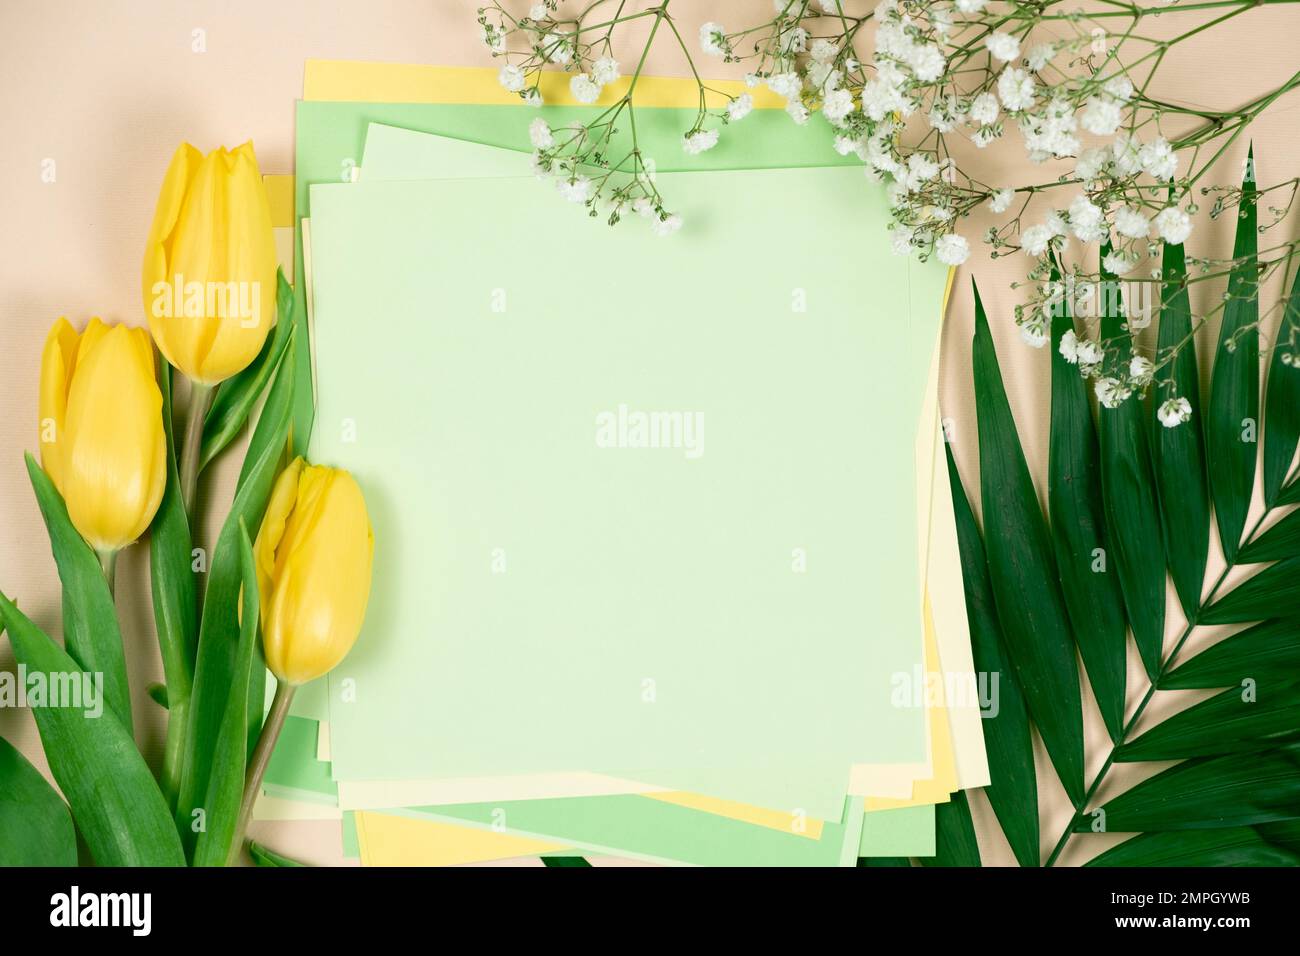 Maquette de printemps - fleurs et un endroit pour le texte. Bonjour mars, avril, mai, bonne journée des femmes Banque D'Images